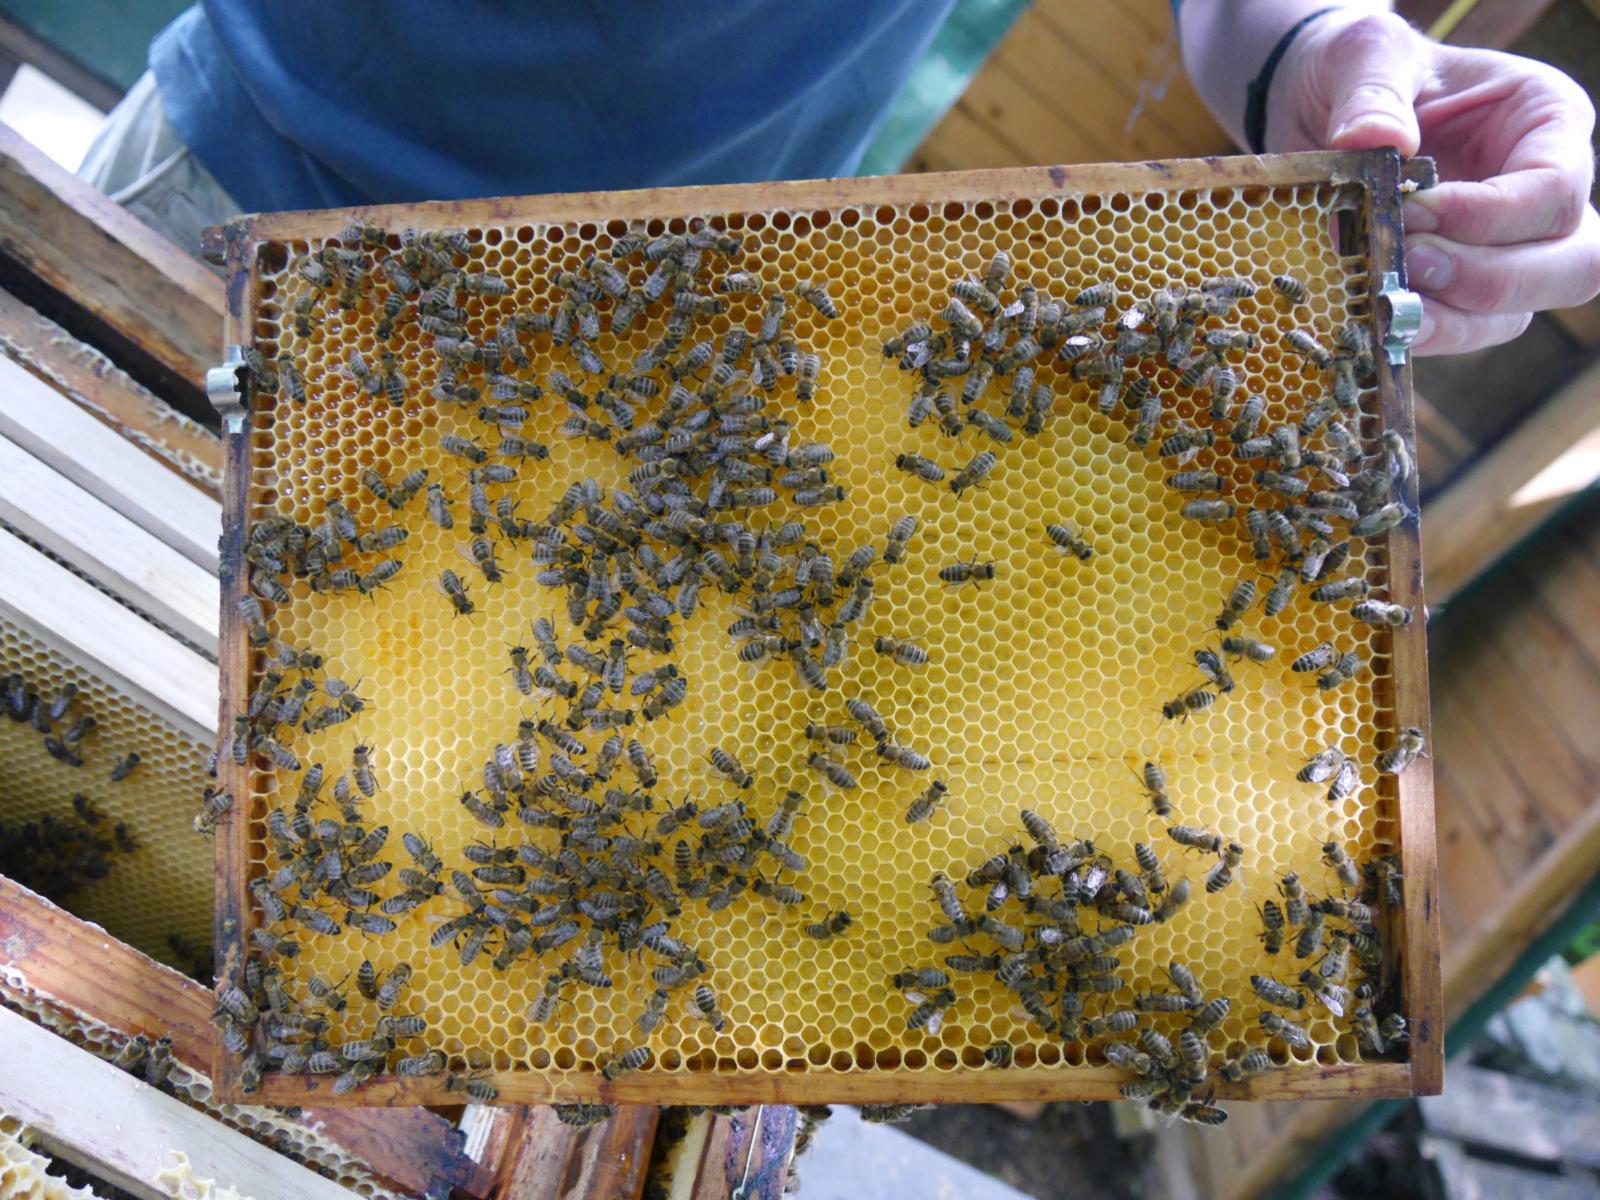 Die Bienen bleiben ganz ruhig, wenn der Hobby-Imker nach dem Rechten schaut. (Foto: FH Münster/Rena Ronge)